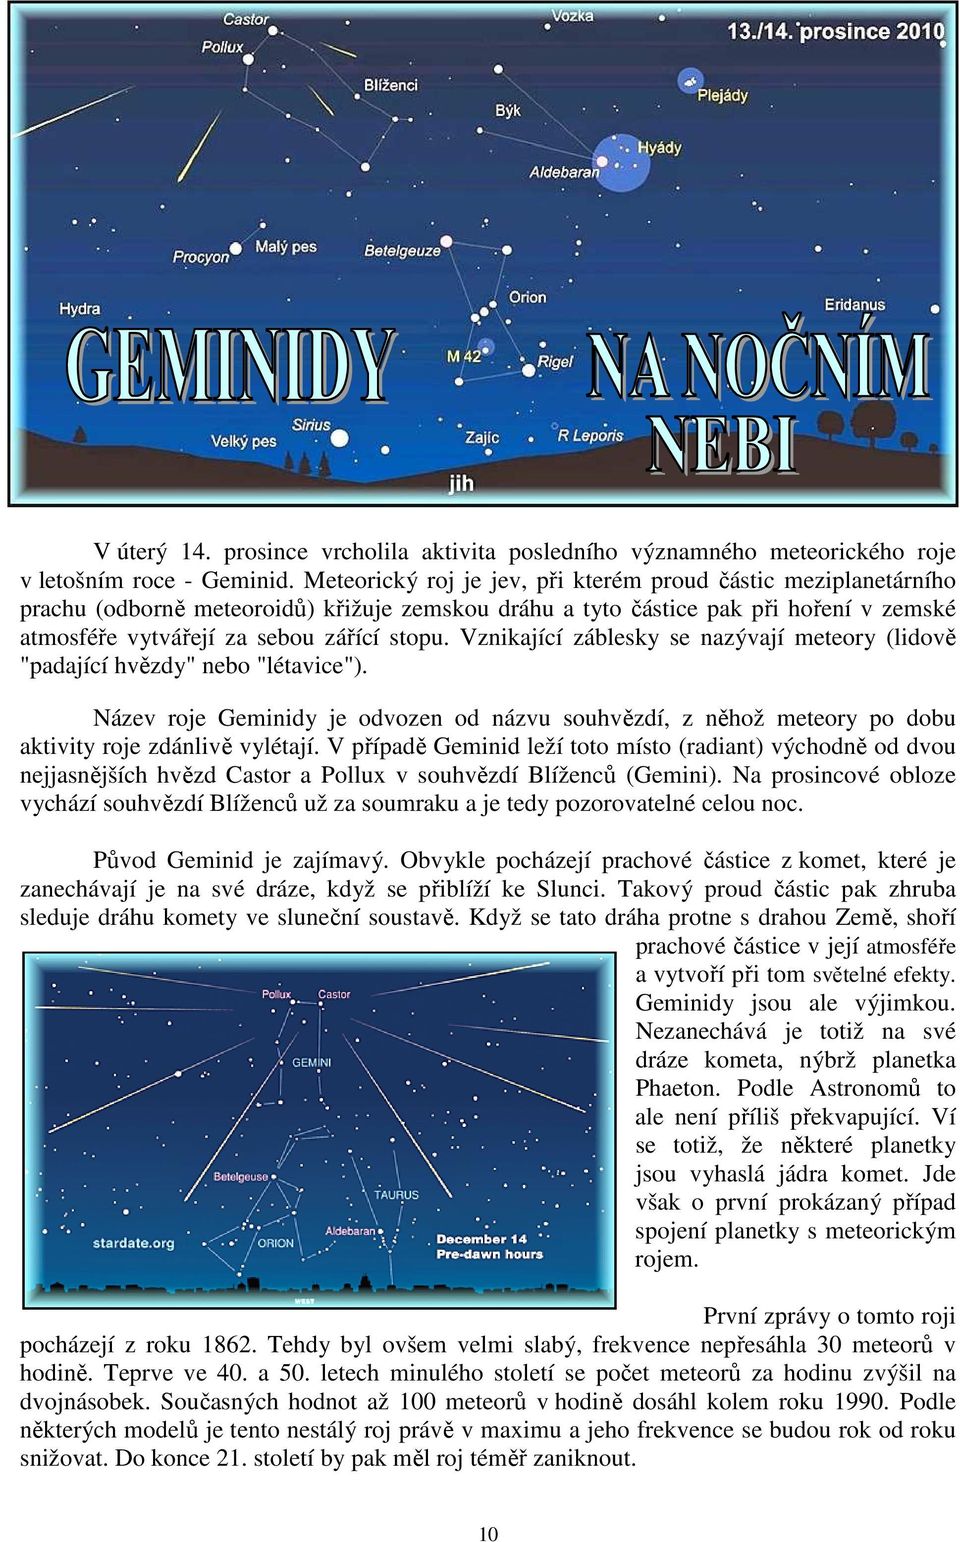 Vznikající záblesky se nazývají meteory (lidově "padající hvězdy" nebo "létavice"). Název roje Geminidy je odvozen od názvu souhvězdí, z něhož meteory po dobu aktivity roje zdánlivě vylétají.